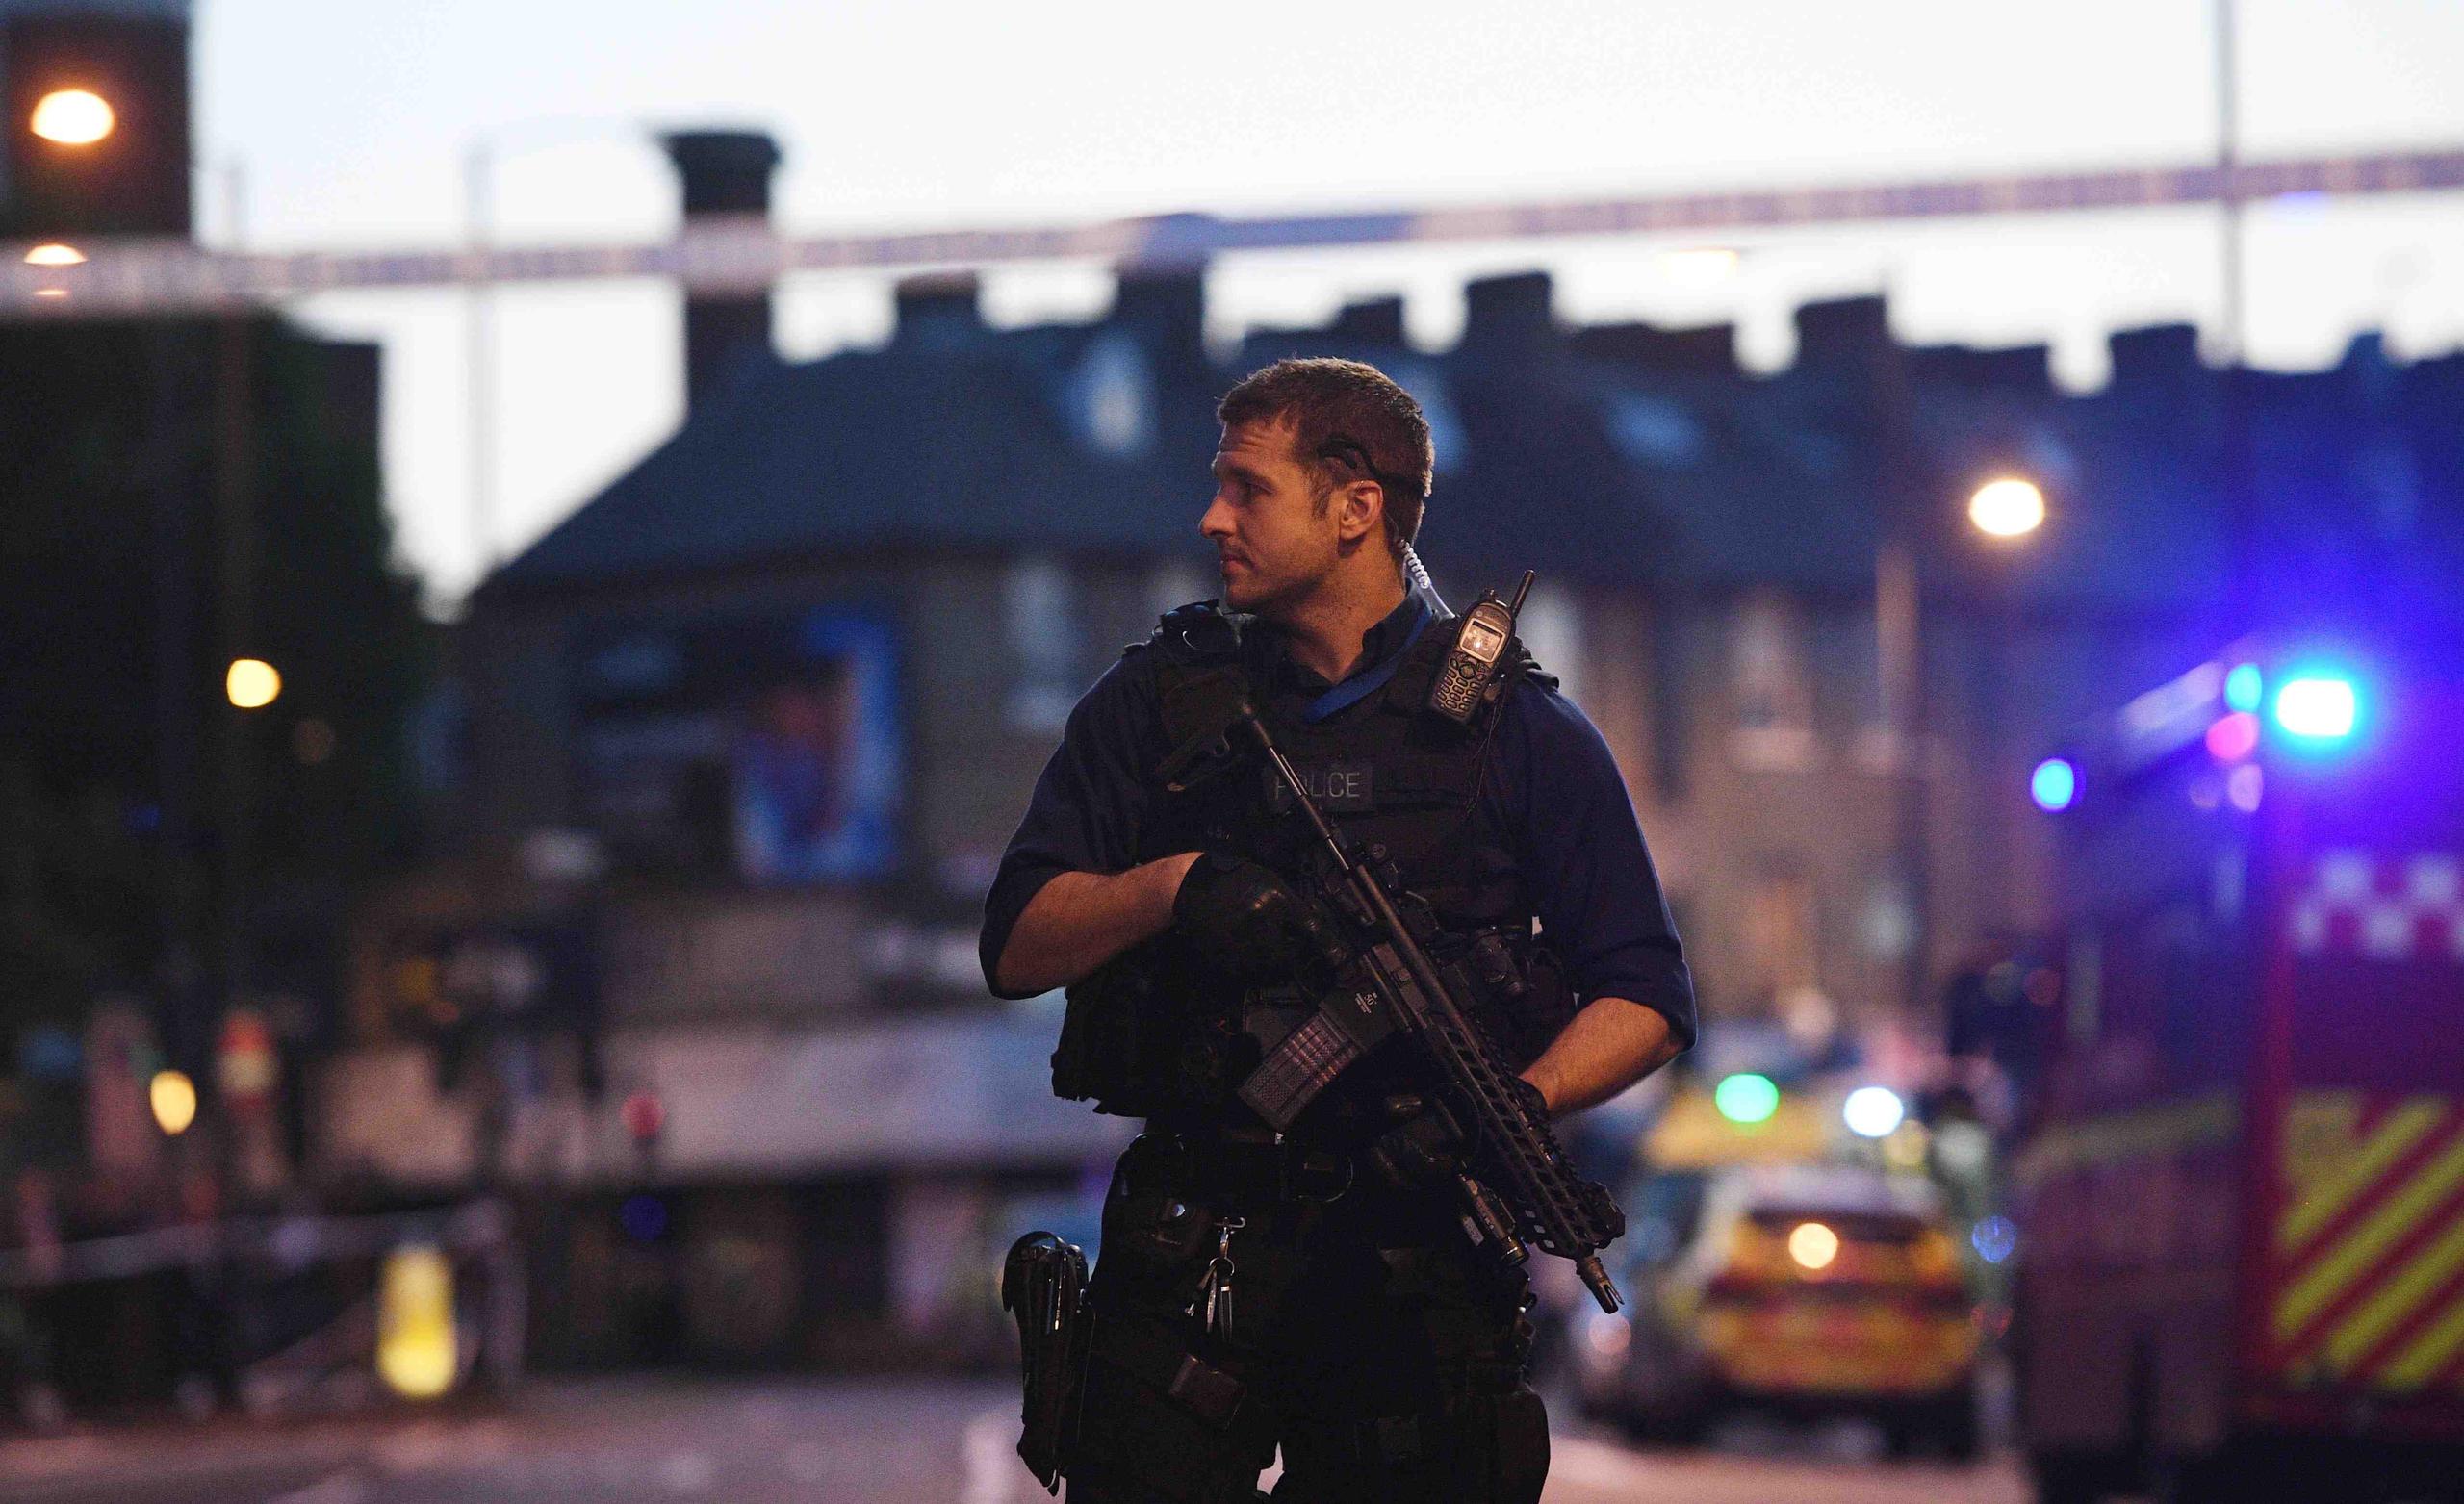 La policía metropolitana de Londres, confirmó que ha aumentado el número de patrullas que velan por la seguridad de la comunidad musulmana cerca de sus centros de reunión. (EFE)